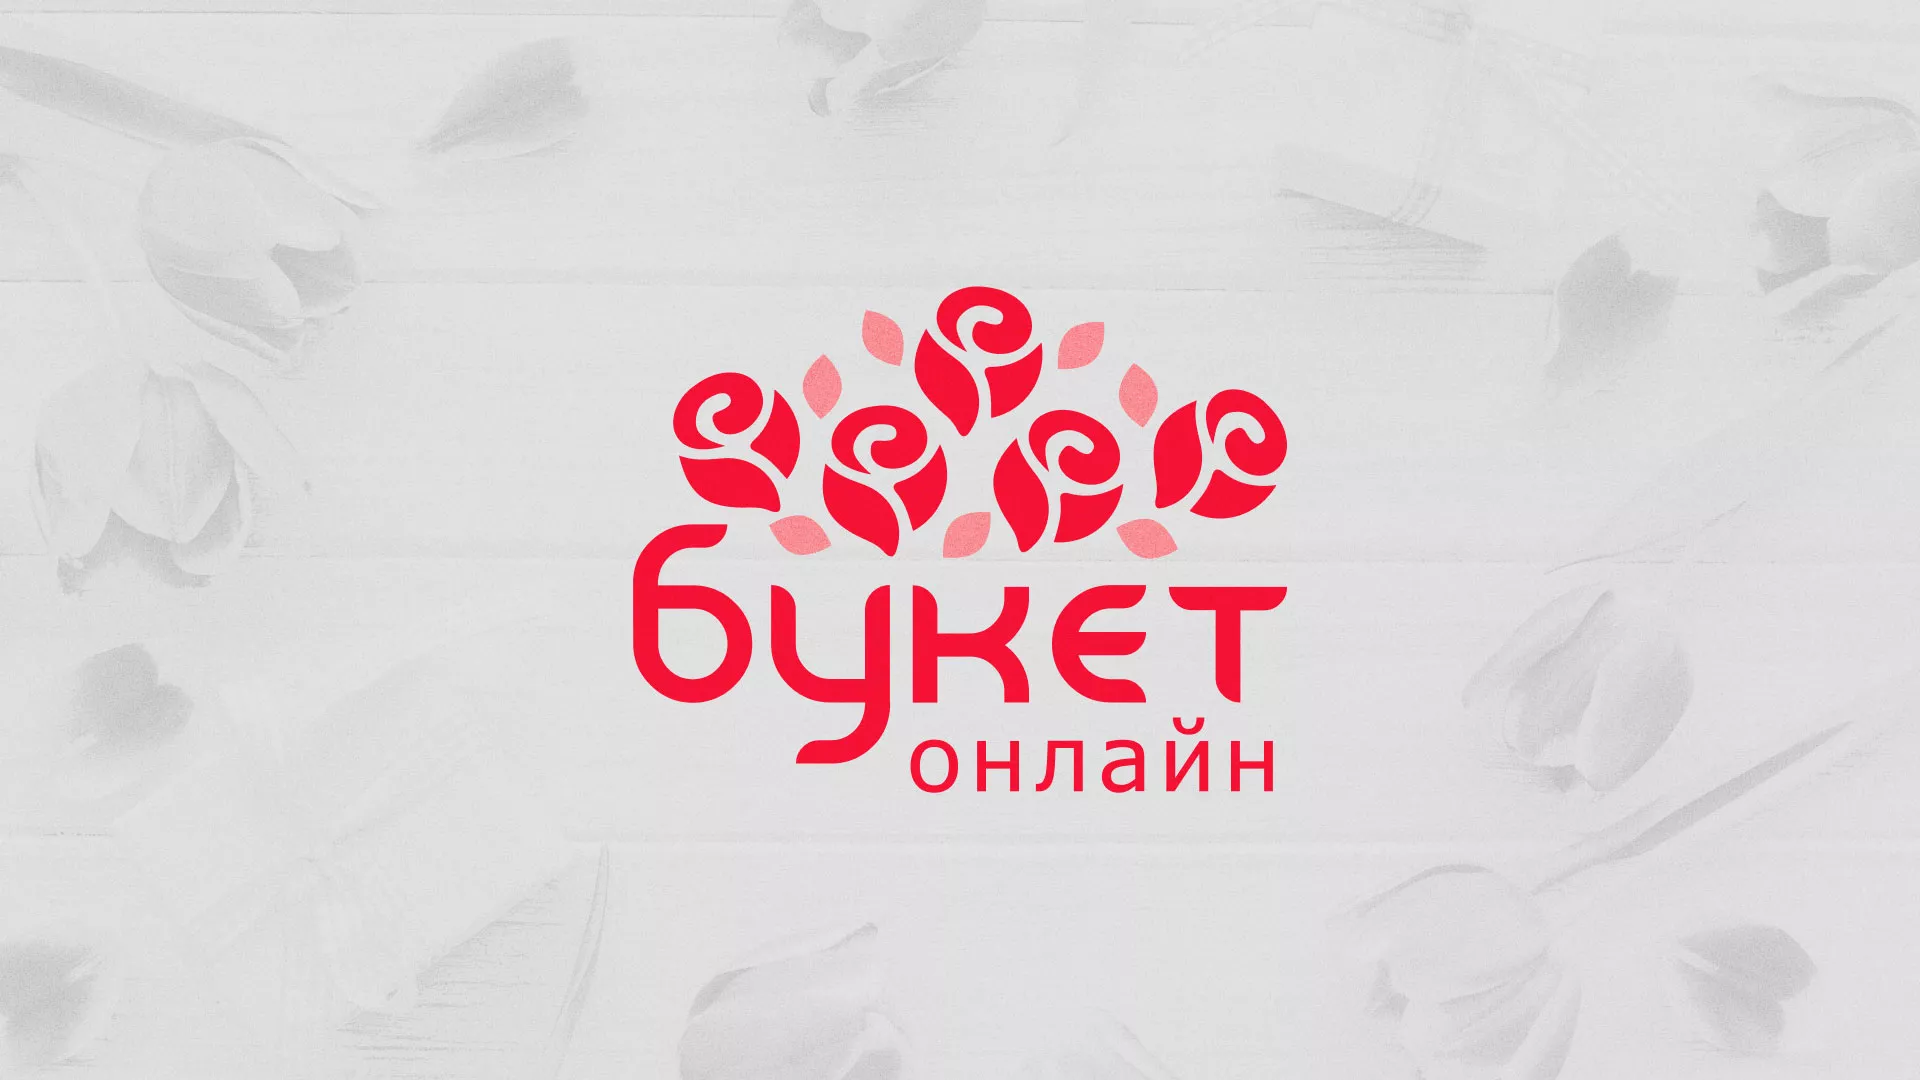 Создание интернет-магазина «Букет-онлайн» по цветам в Щиграх